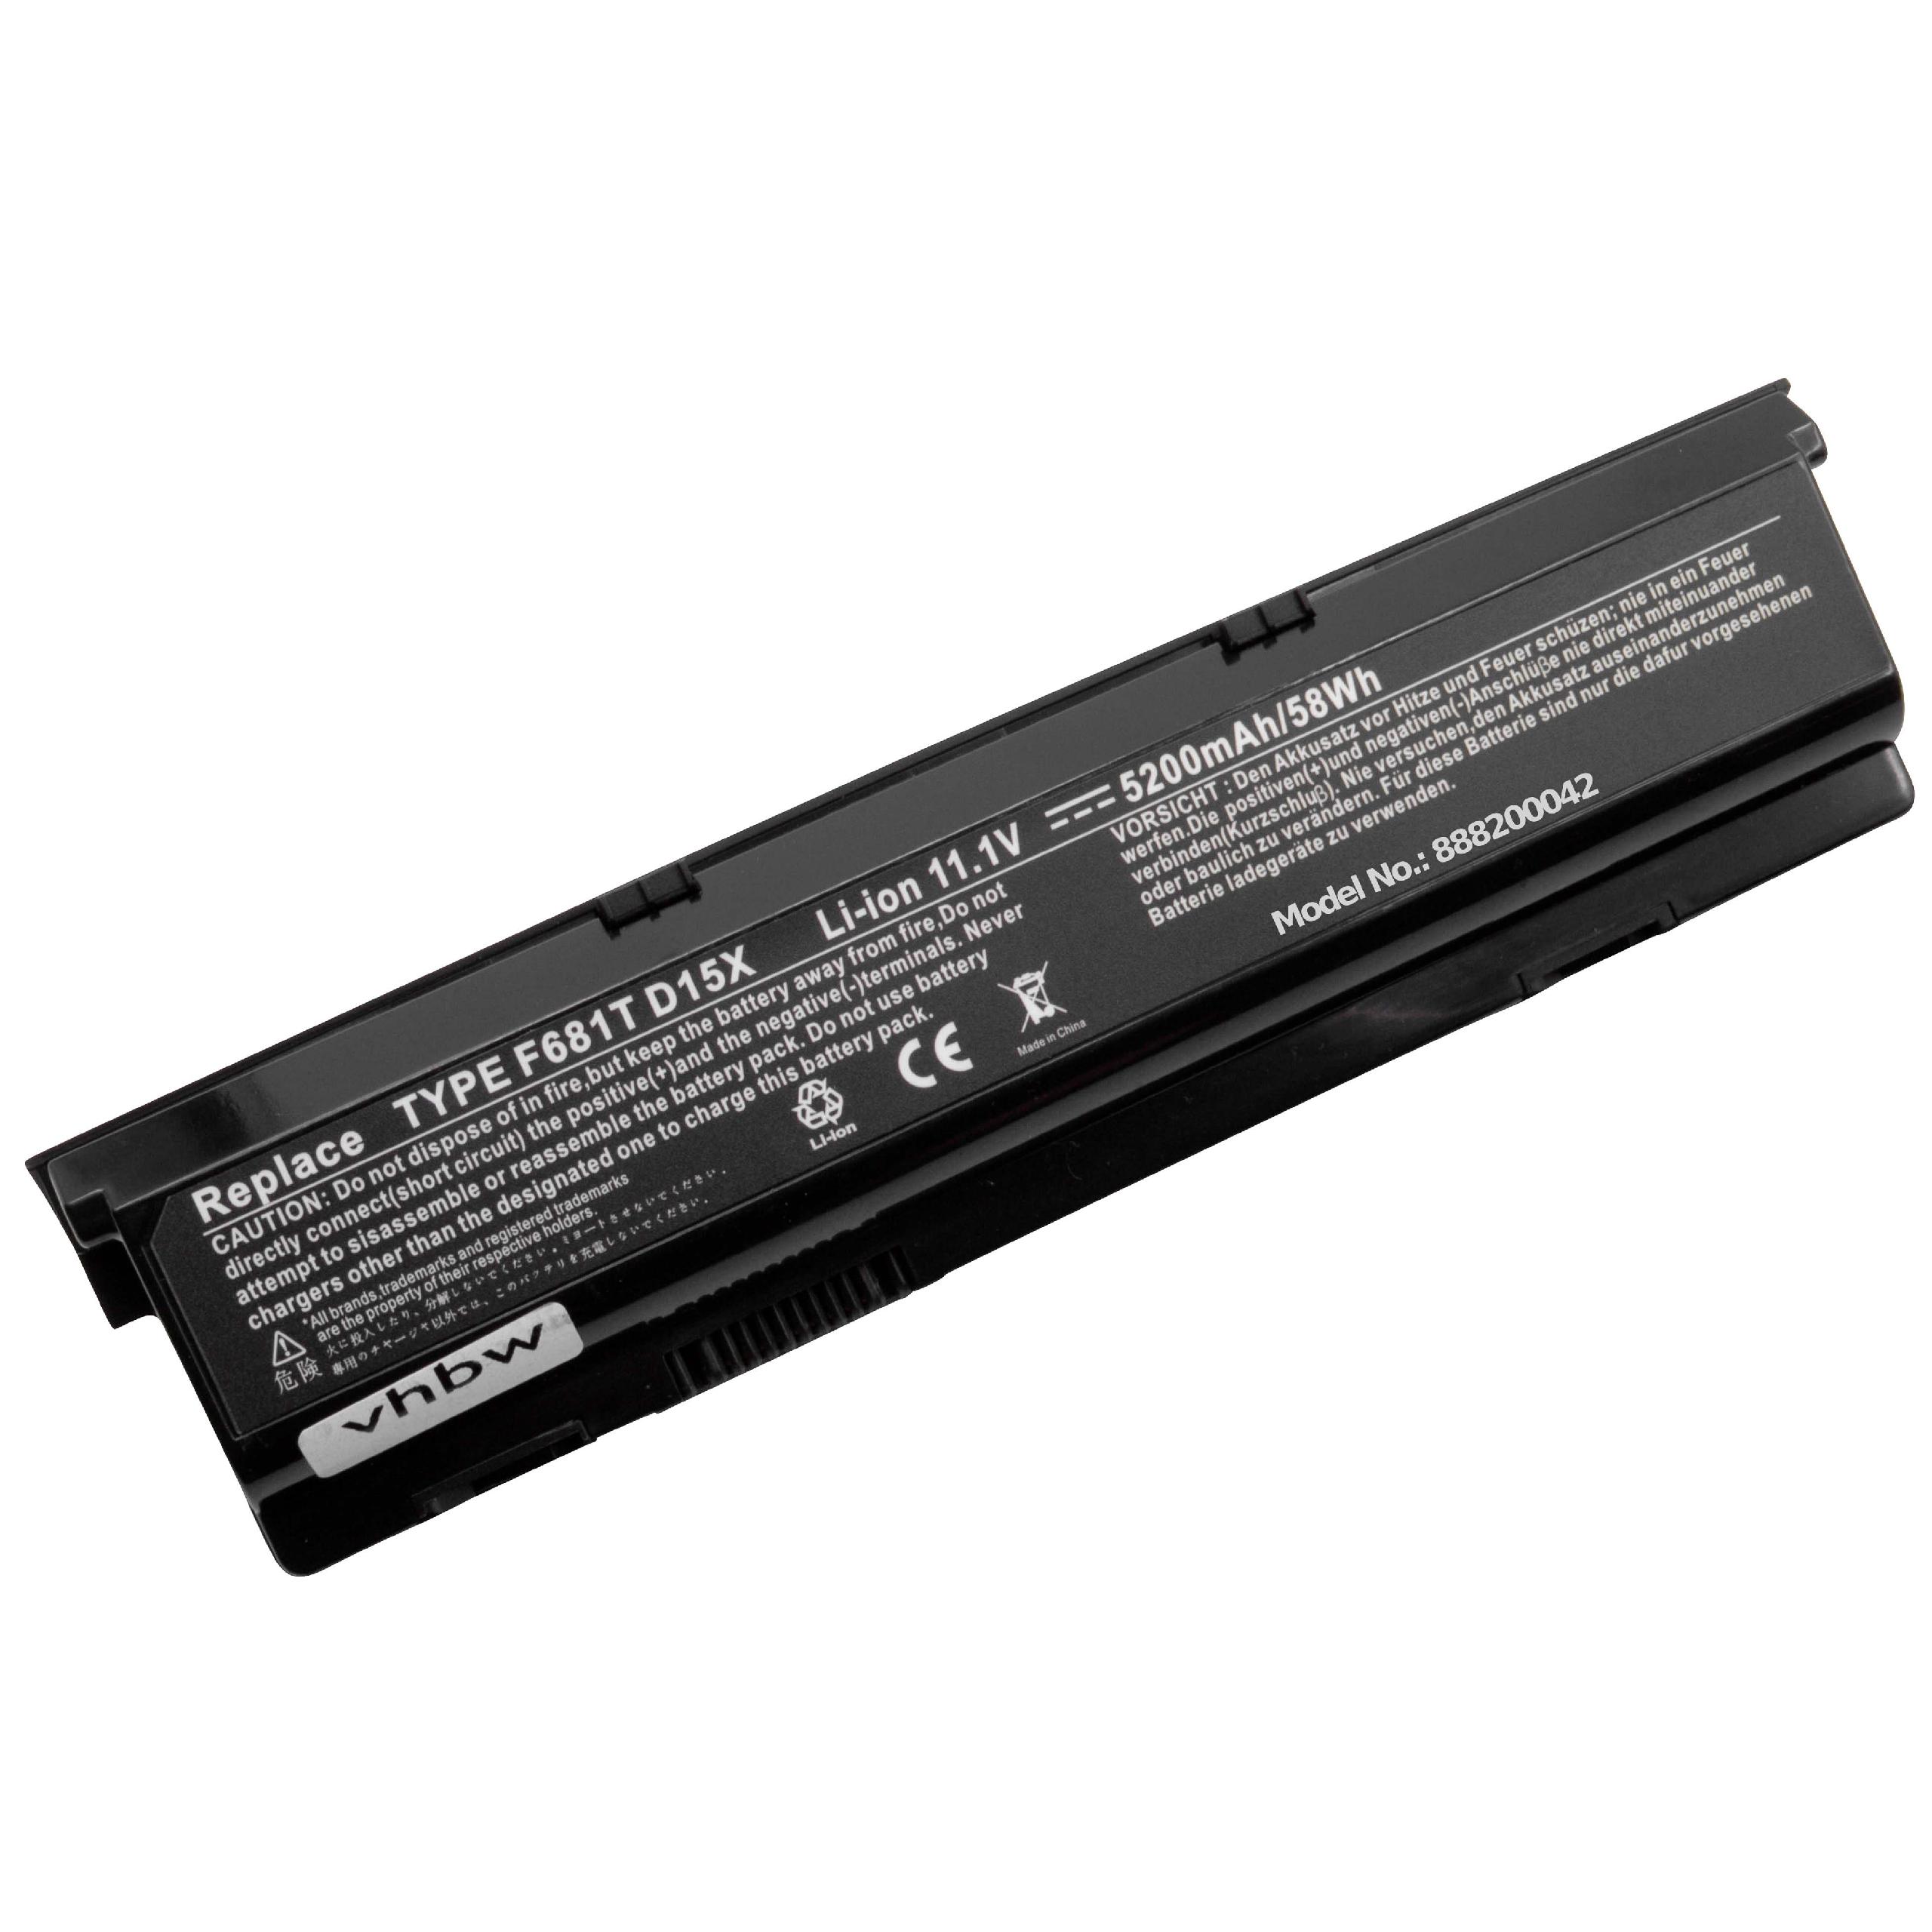 Akumulator do laptopa zamiennik Dell 0HC26Y, 0F681T, 0D951T, 312-0207, 0W3VX3 - 5200 mAh 11,1 V Li-Ion, czarny